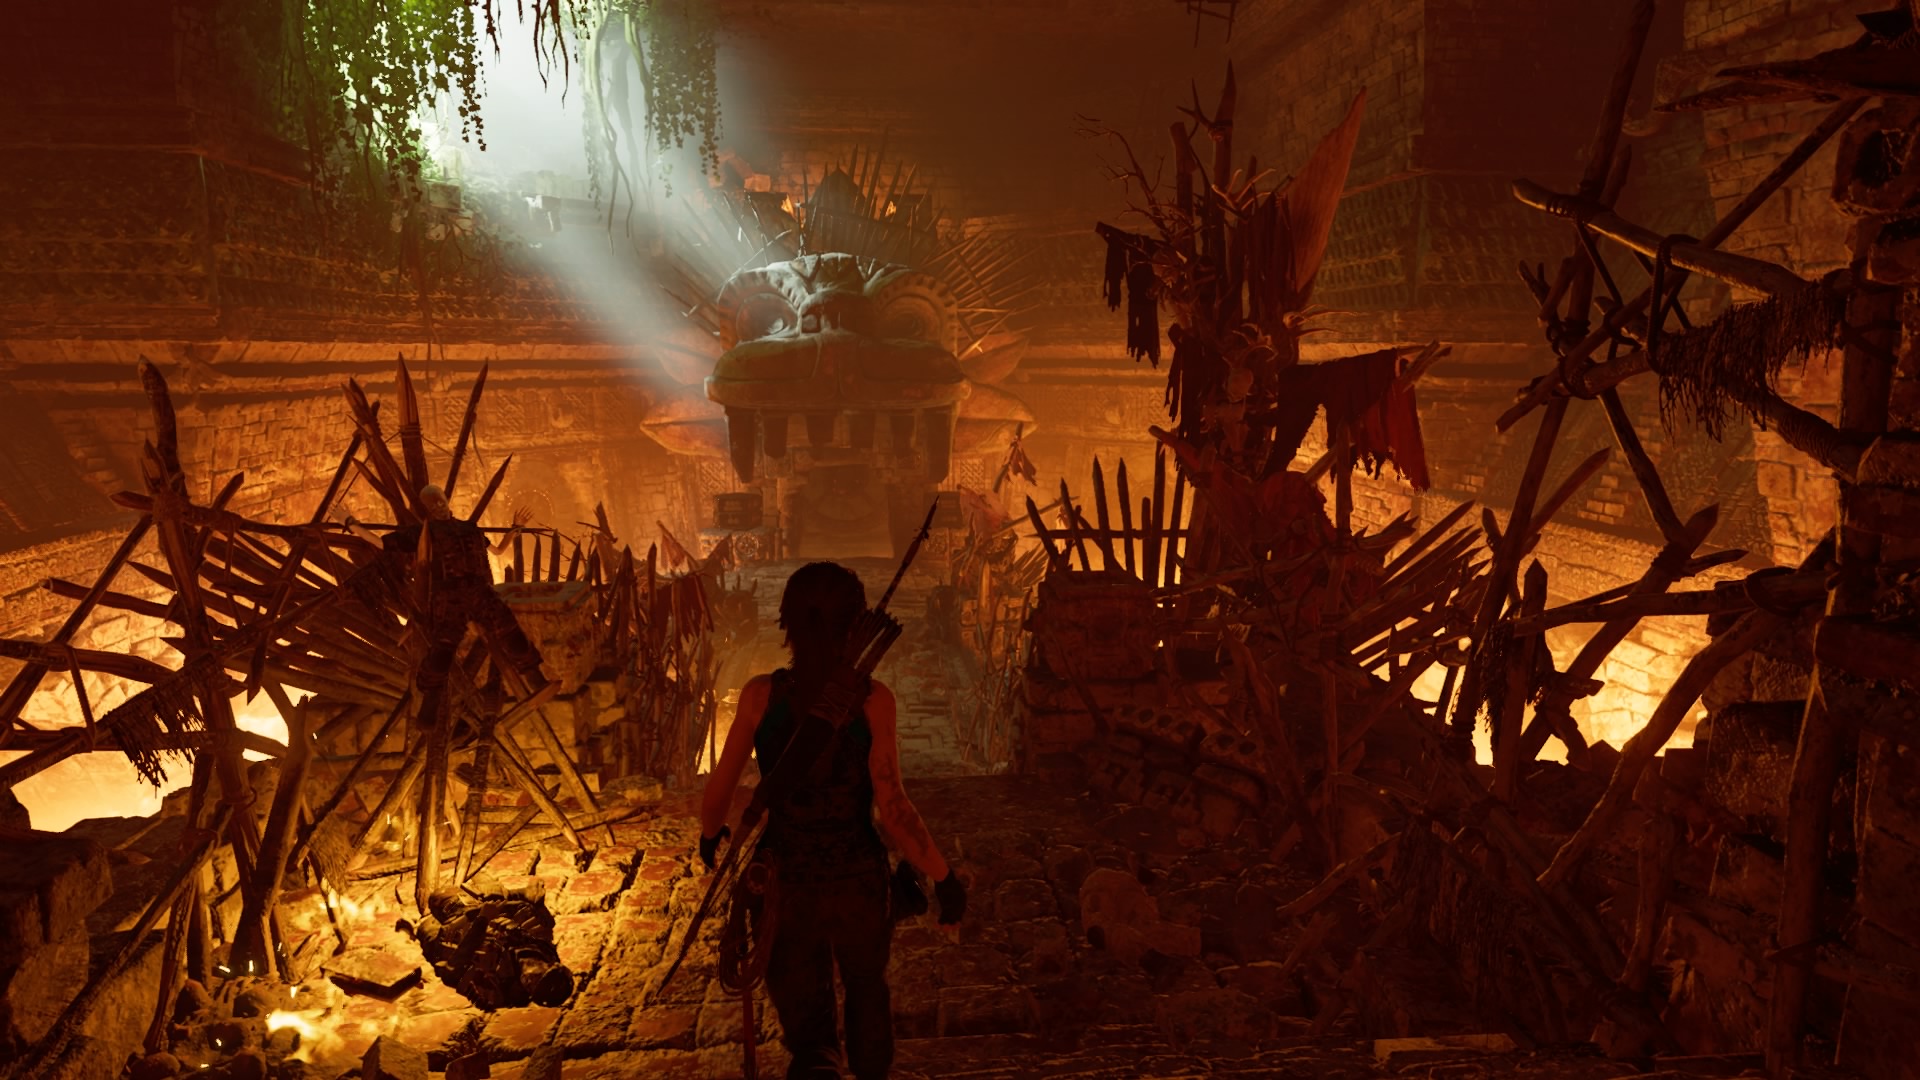 Las luces y sombras de Lara Croft